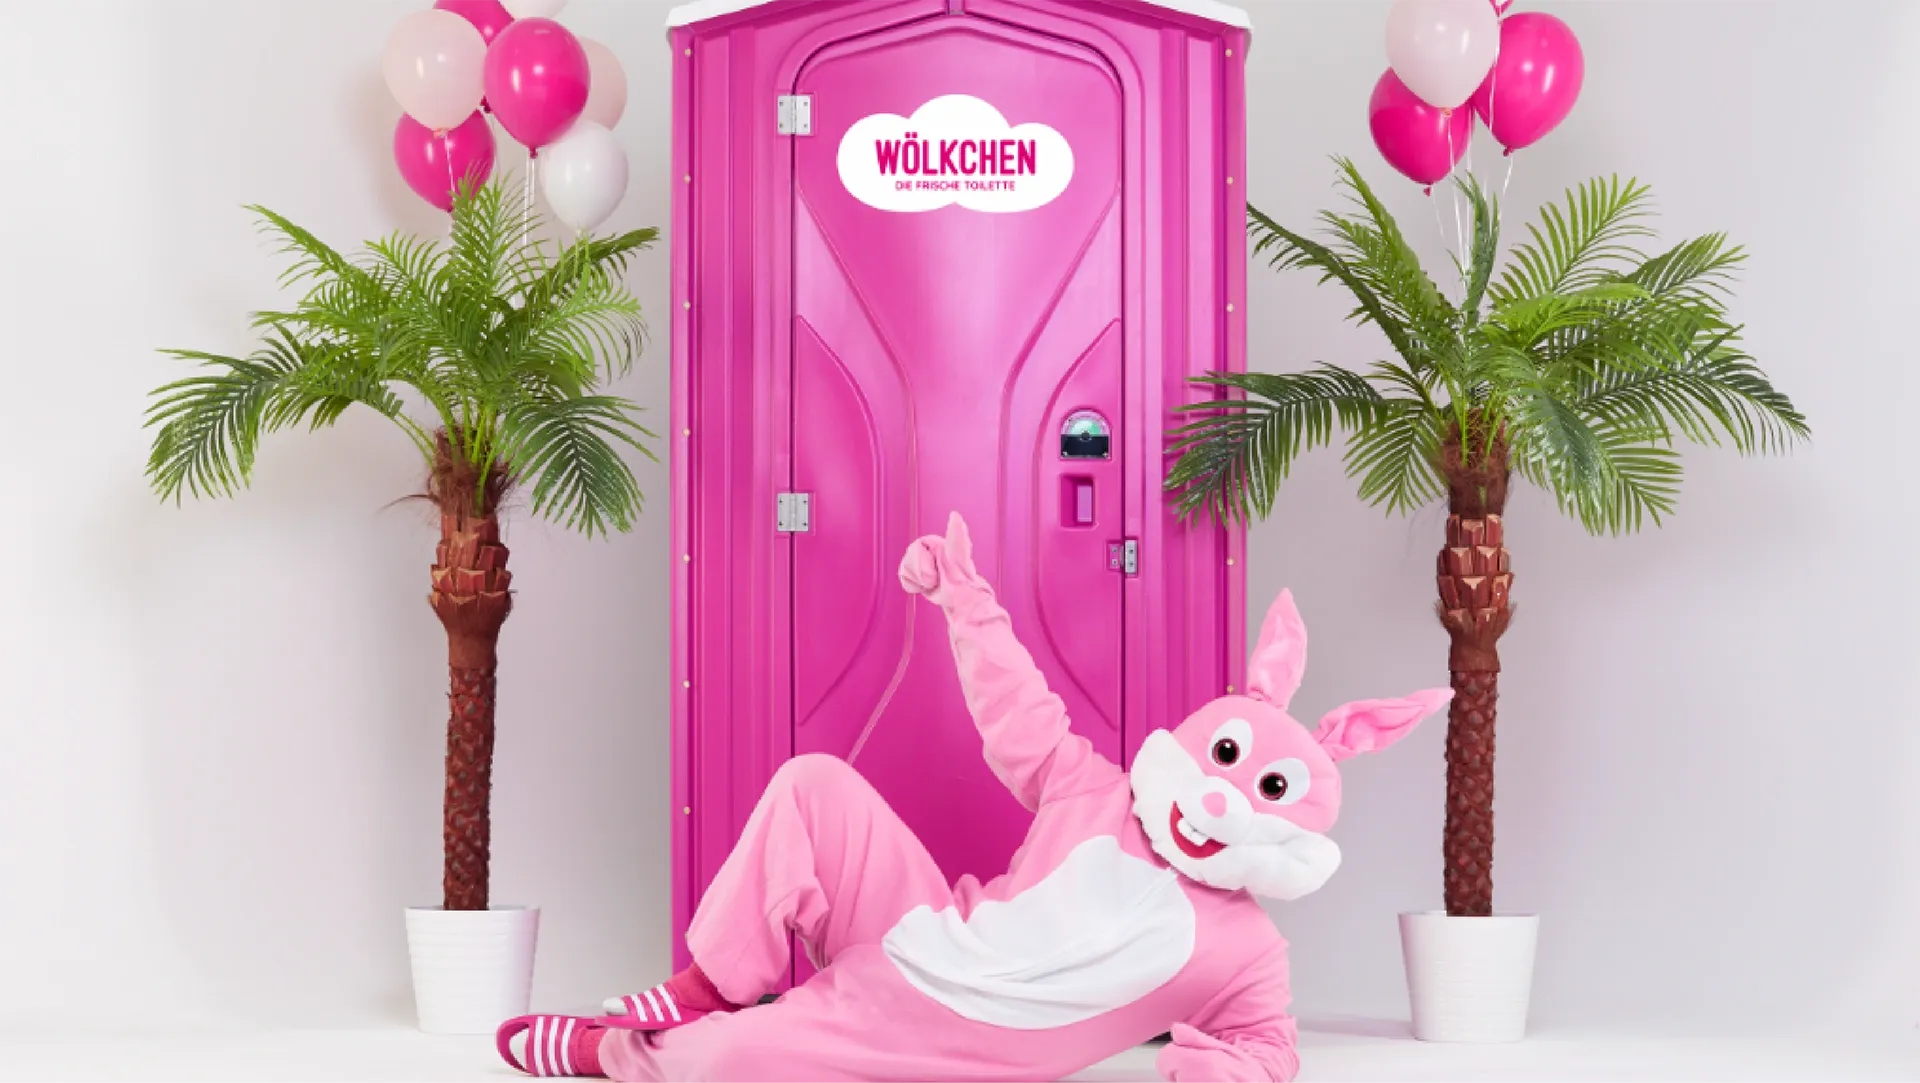 Ein Bild zeigt ein rosa Hasenkostüm vor der Wölkchen frische Toilette.